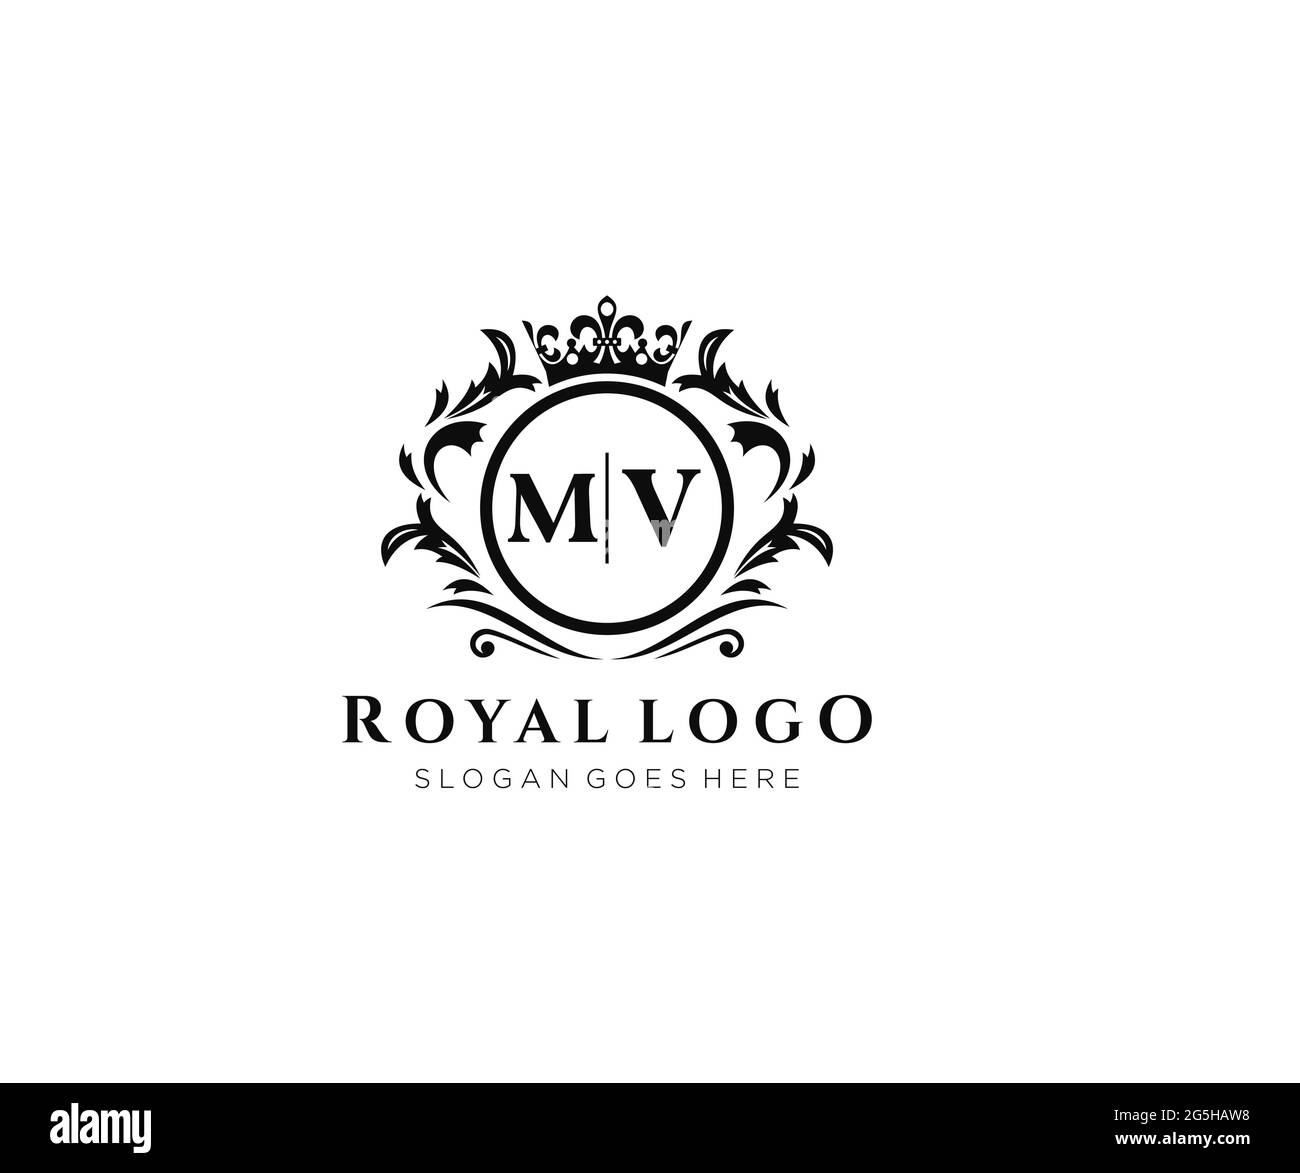 Modèle de logo de marque MV Letter Luxurious, pour restaurant, Royalty, Boutique, café, Hôtel, héraldique, bijoux, mode et autres illustrations vectorielles. Illustration de Vecteur